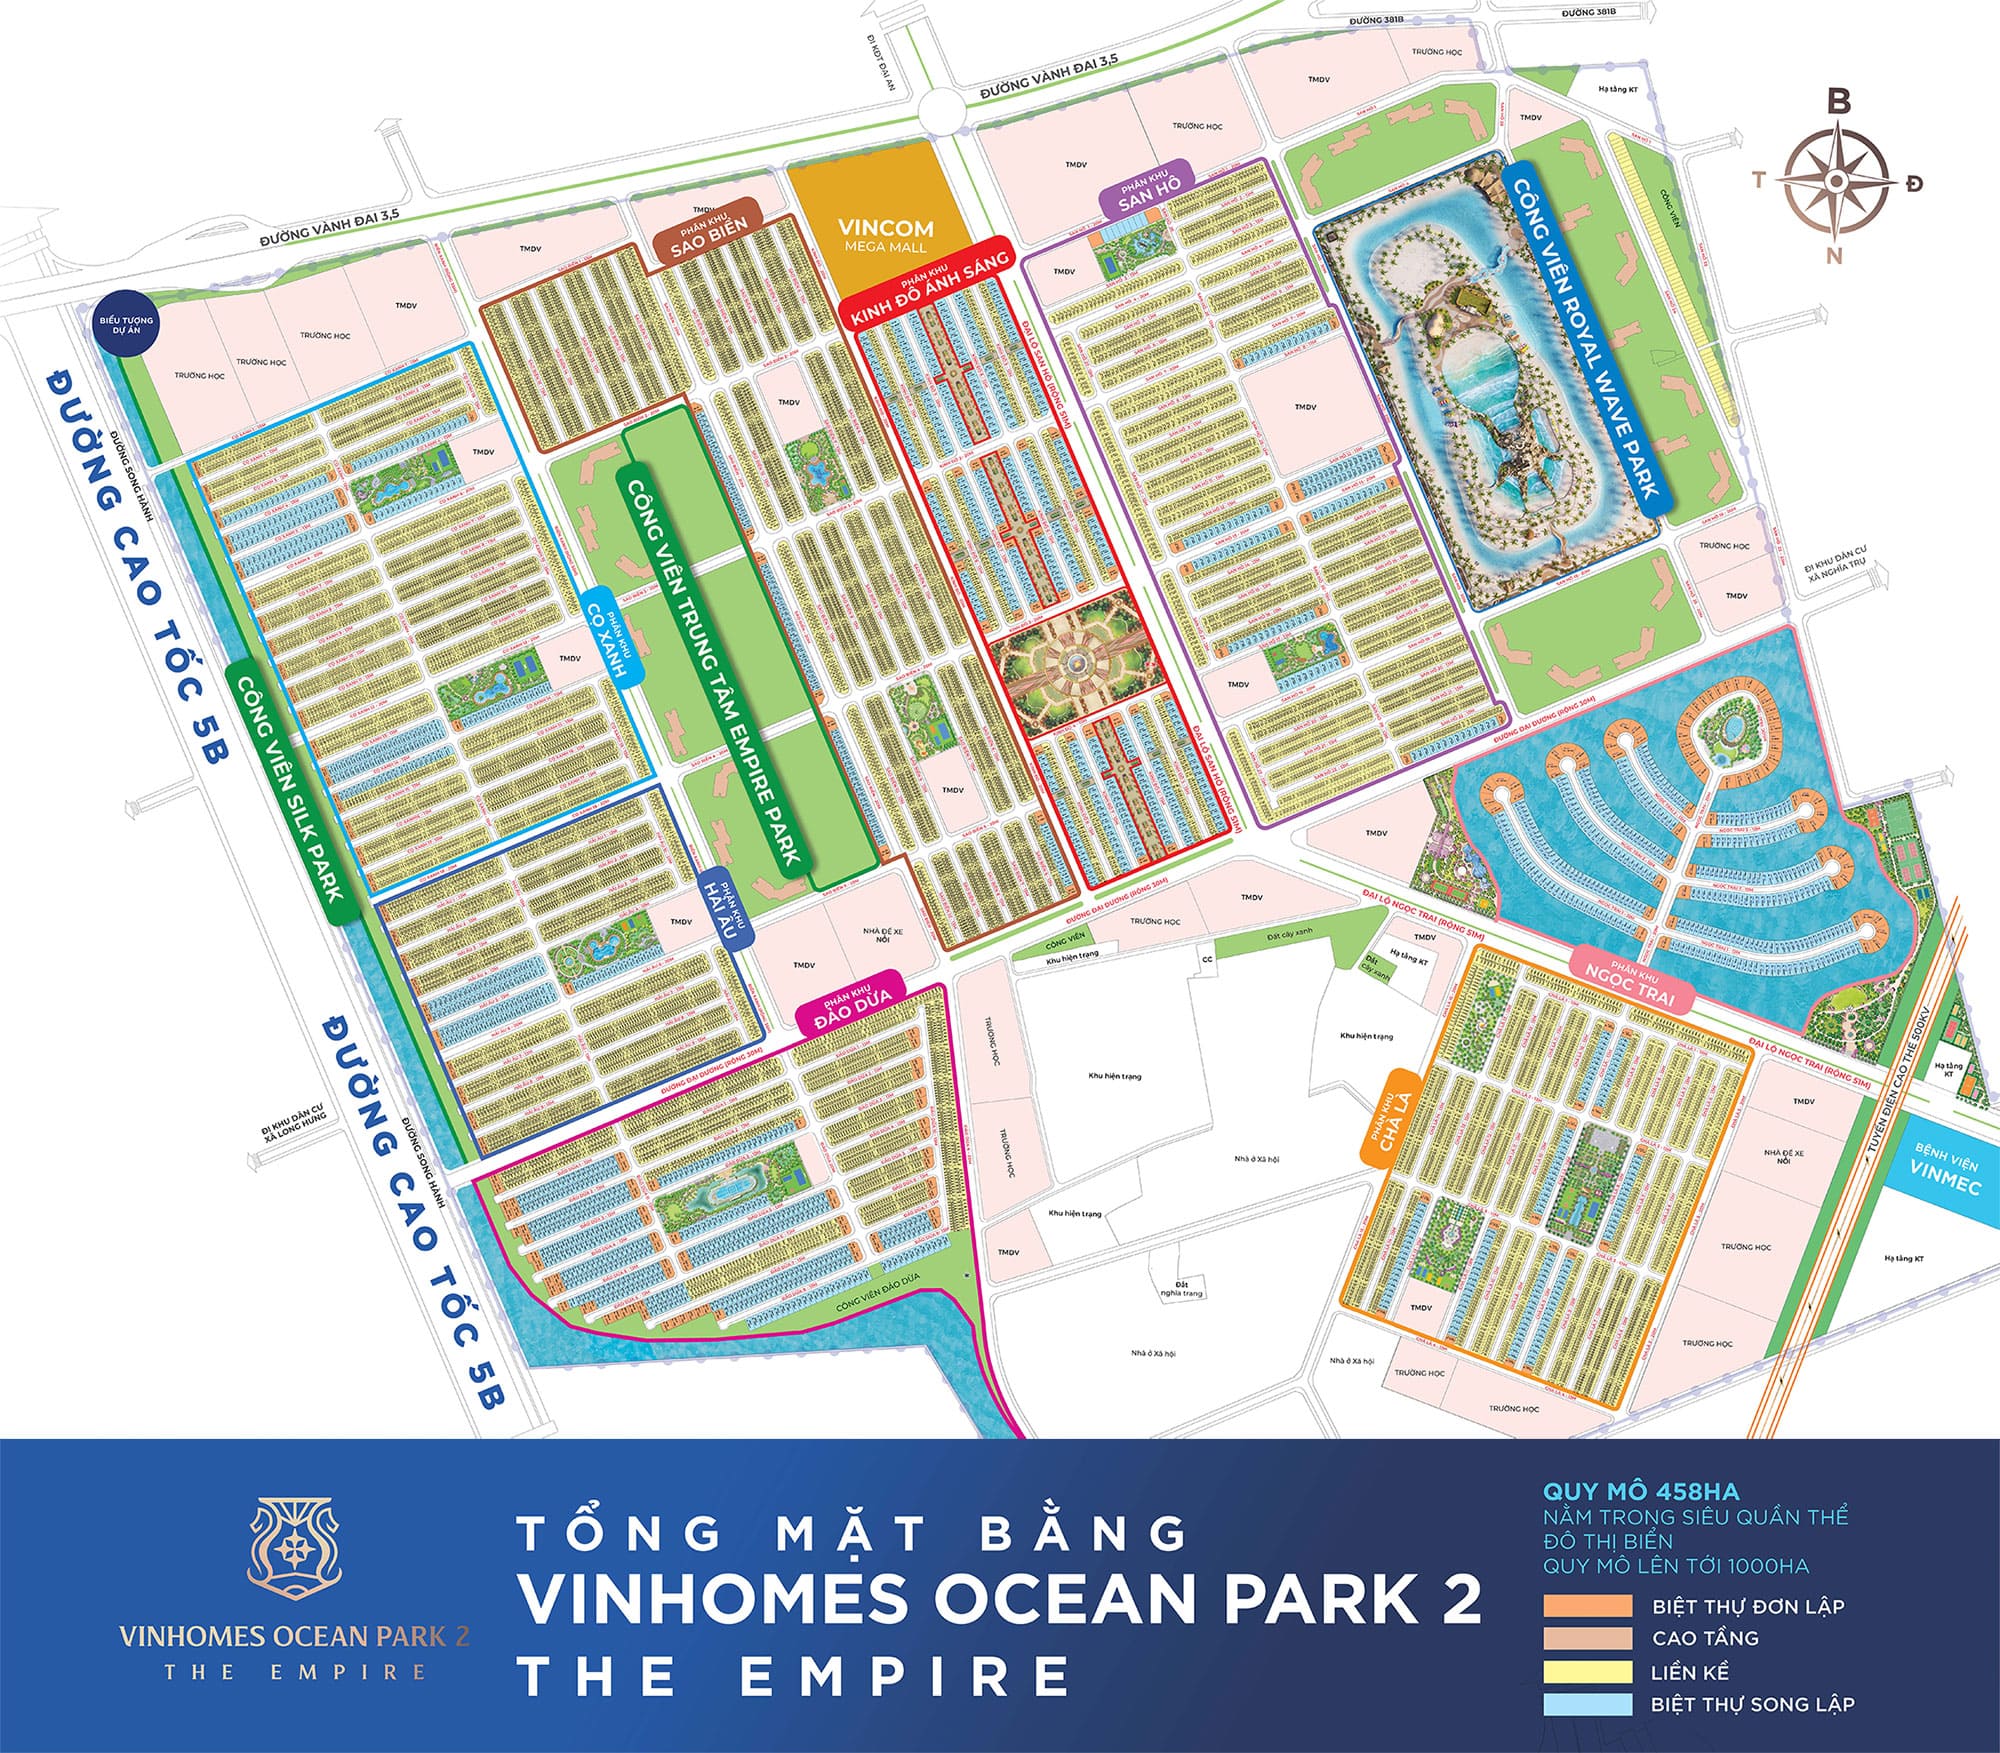 Mặt bằng tổng thể dự án Vinhomes Ocean Park 2 - The Empire có quy mô lên đến 458ha.